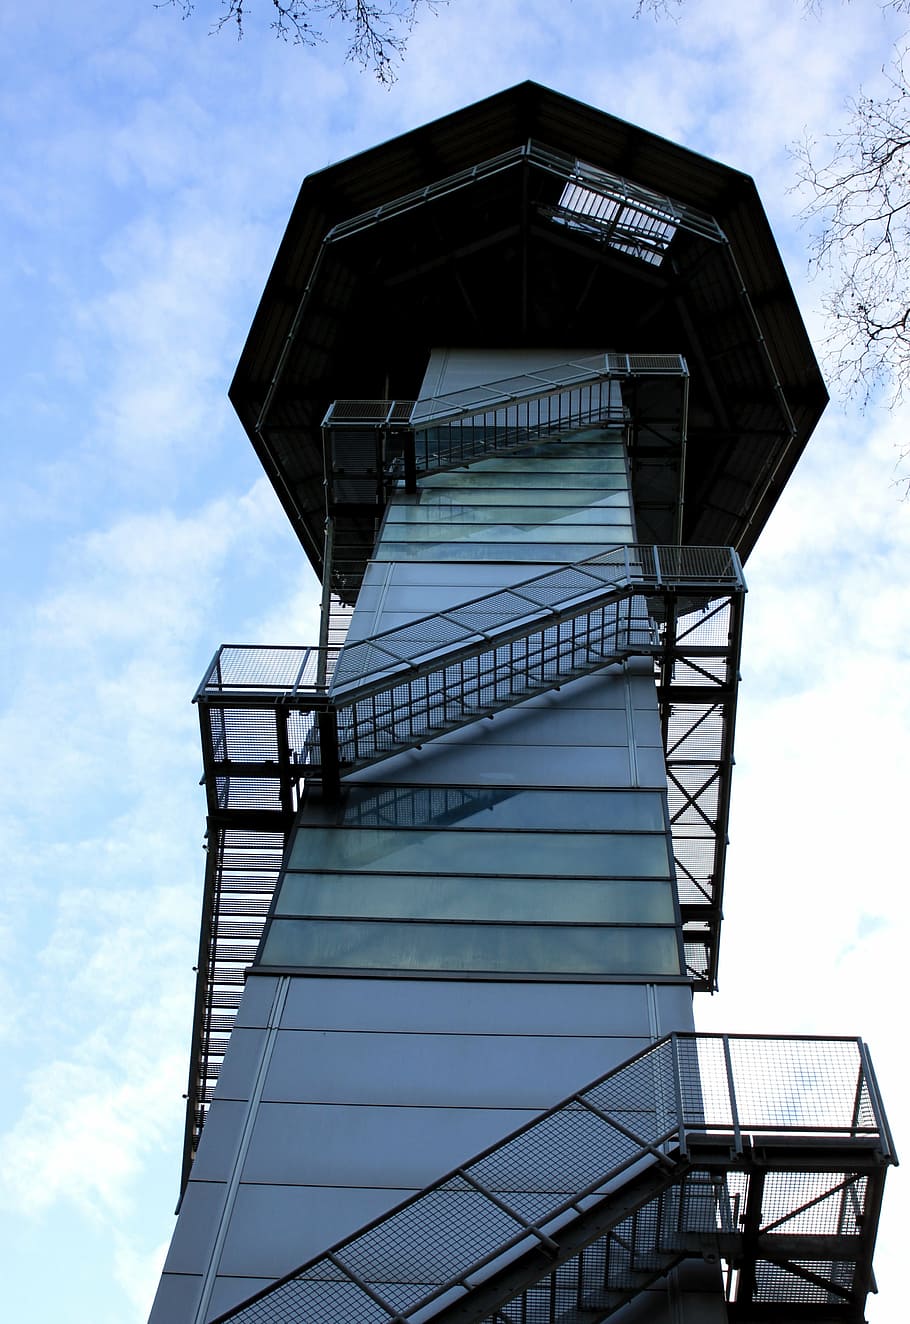 torre de observação, torre, plataforma, construção, alto, escadas, atualizar, gradualmente, trilhos, escada de ferro